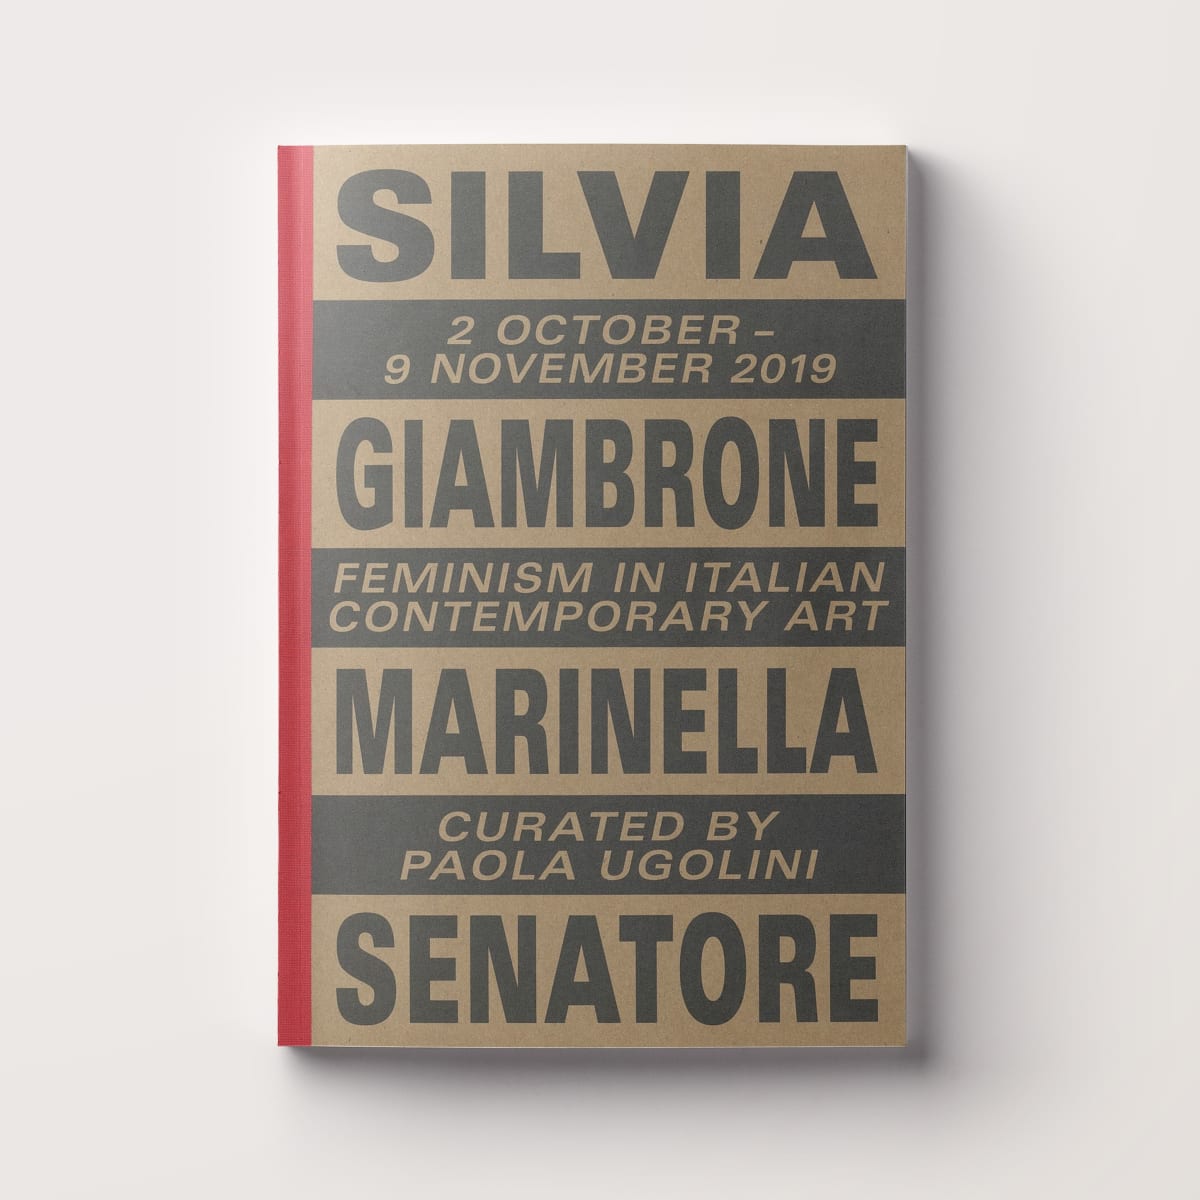 Silvia Giambrone Marinella Senatore